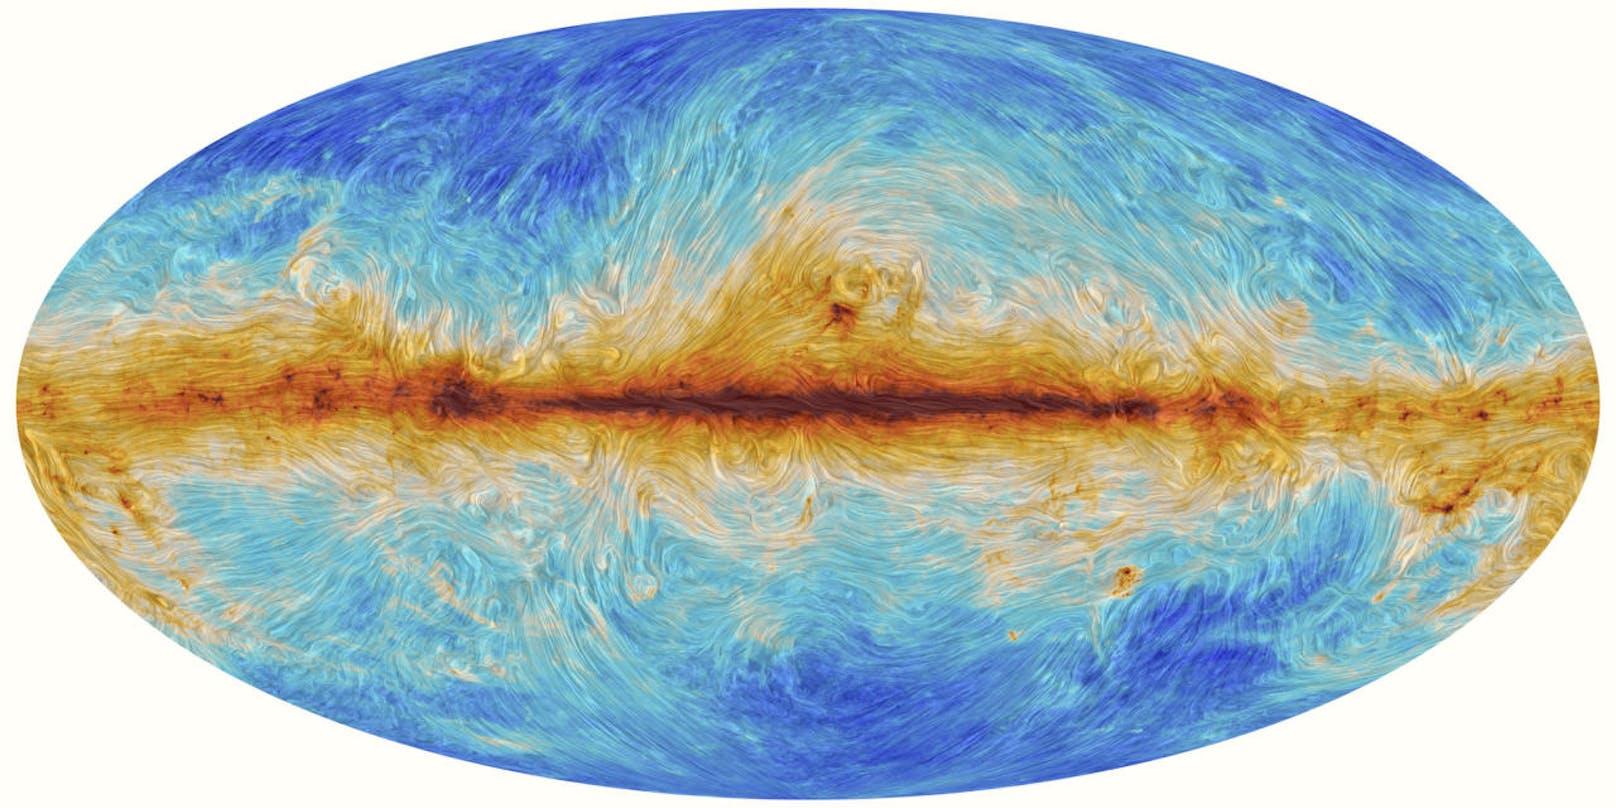 Für diese grafische Darstellung des magnetischen Feldes der Milchstraße wurde polarisiertes Licht gemessen, das vom interstellaren Staub reflektiert wird. Je wärmer die Farben, desto höher die Staubkonzentration.